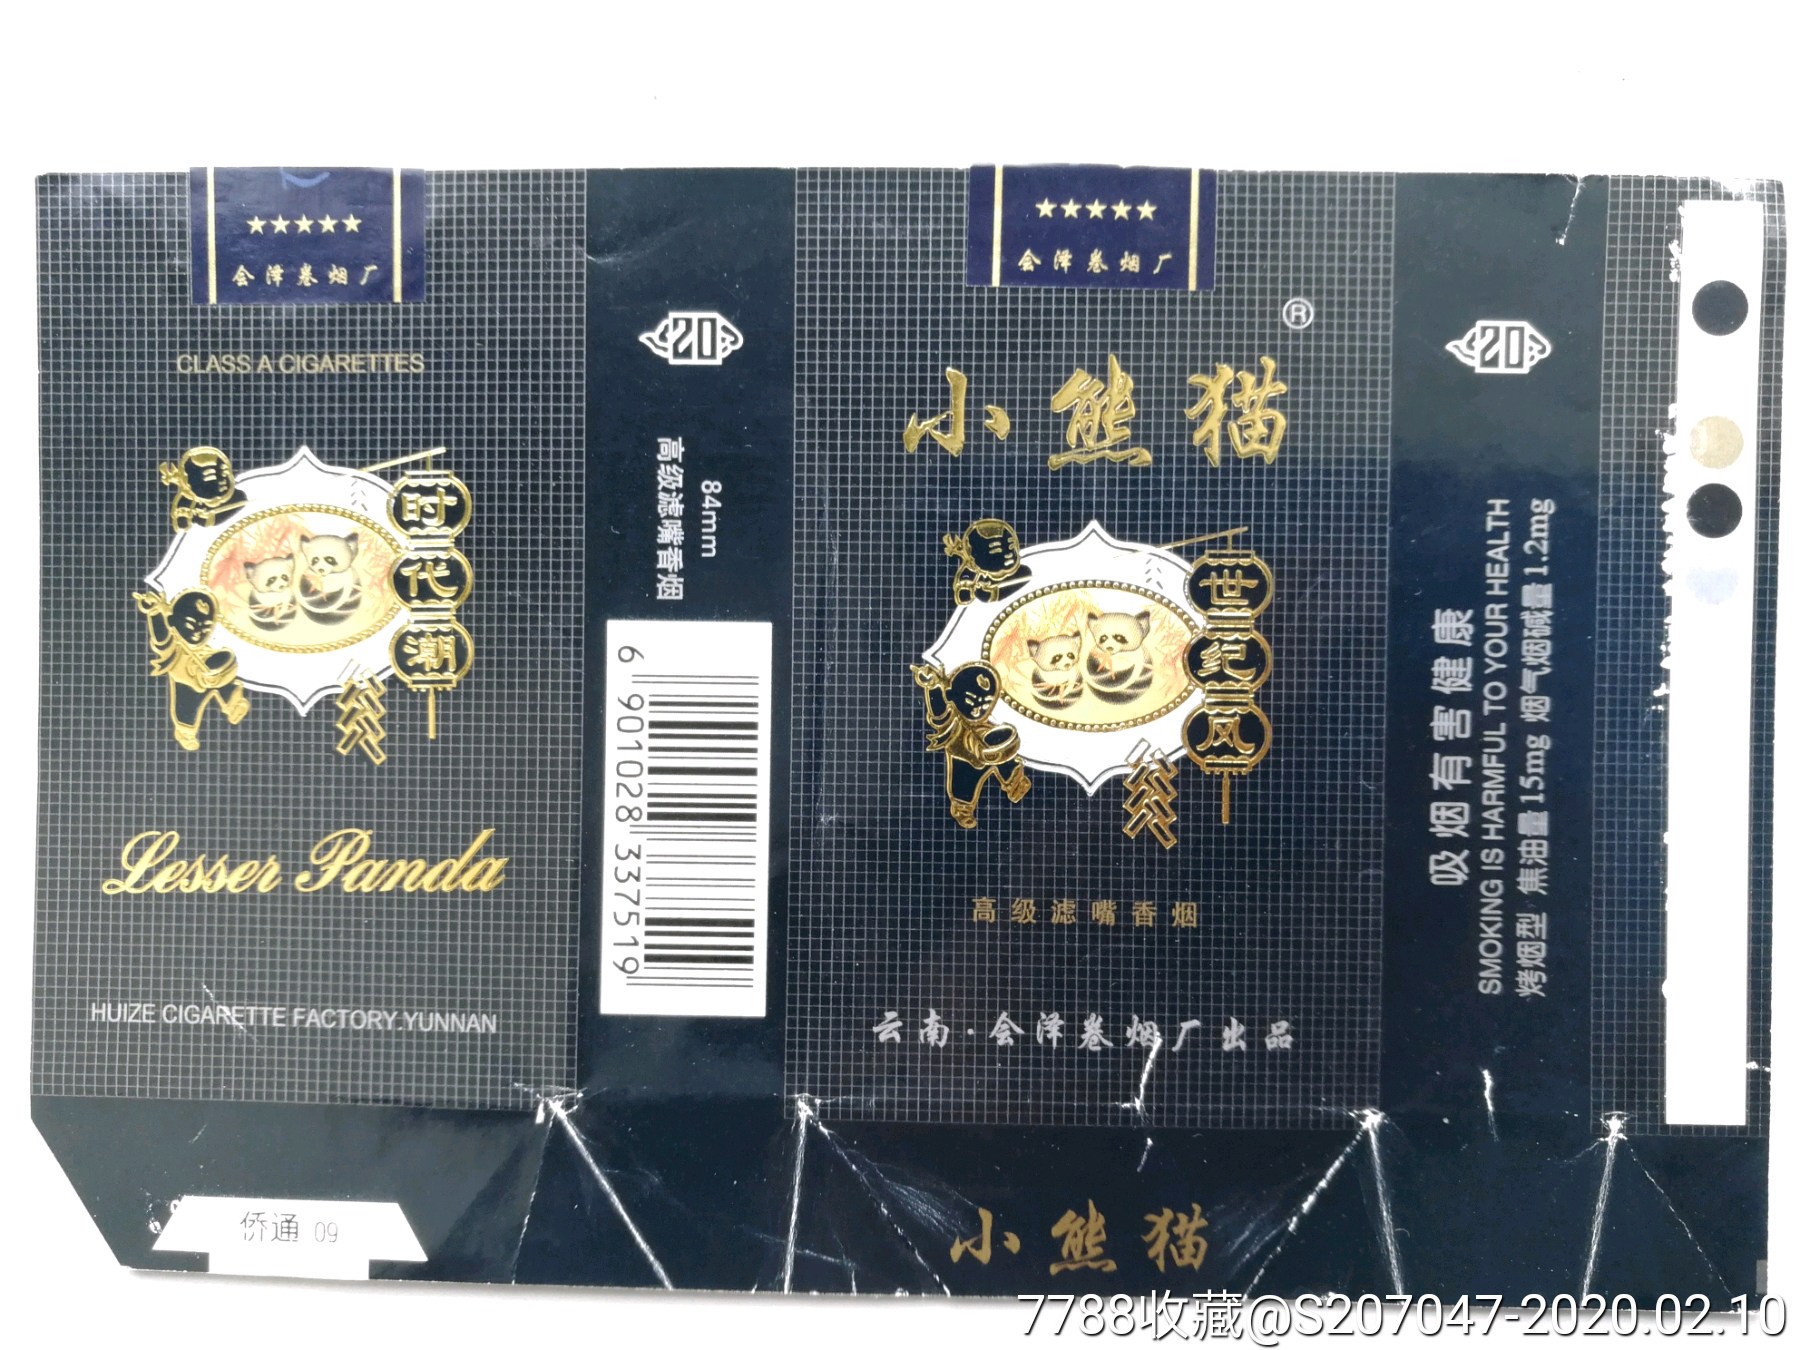 小熊猫香烟 软包图片